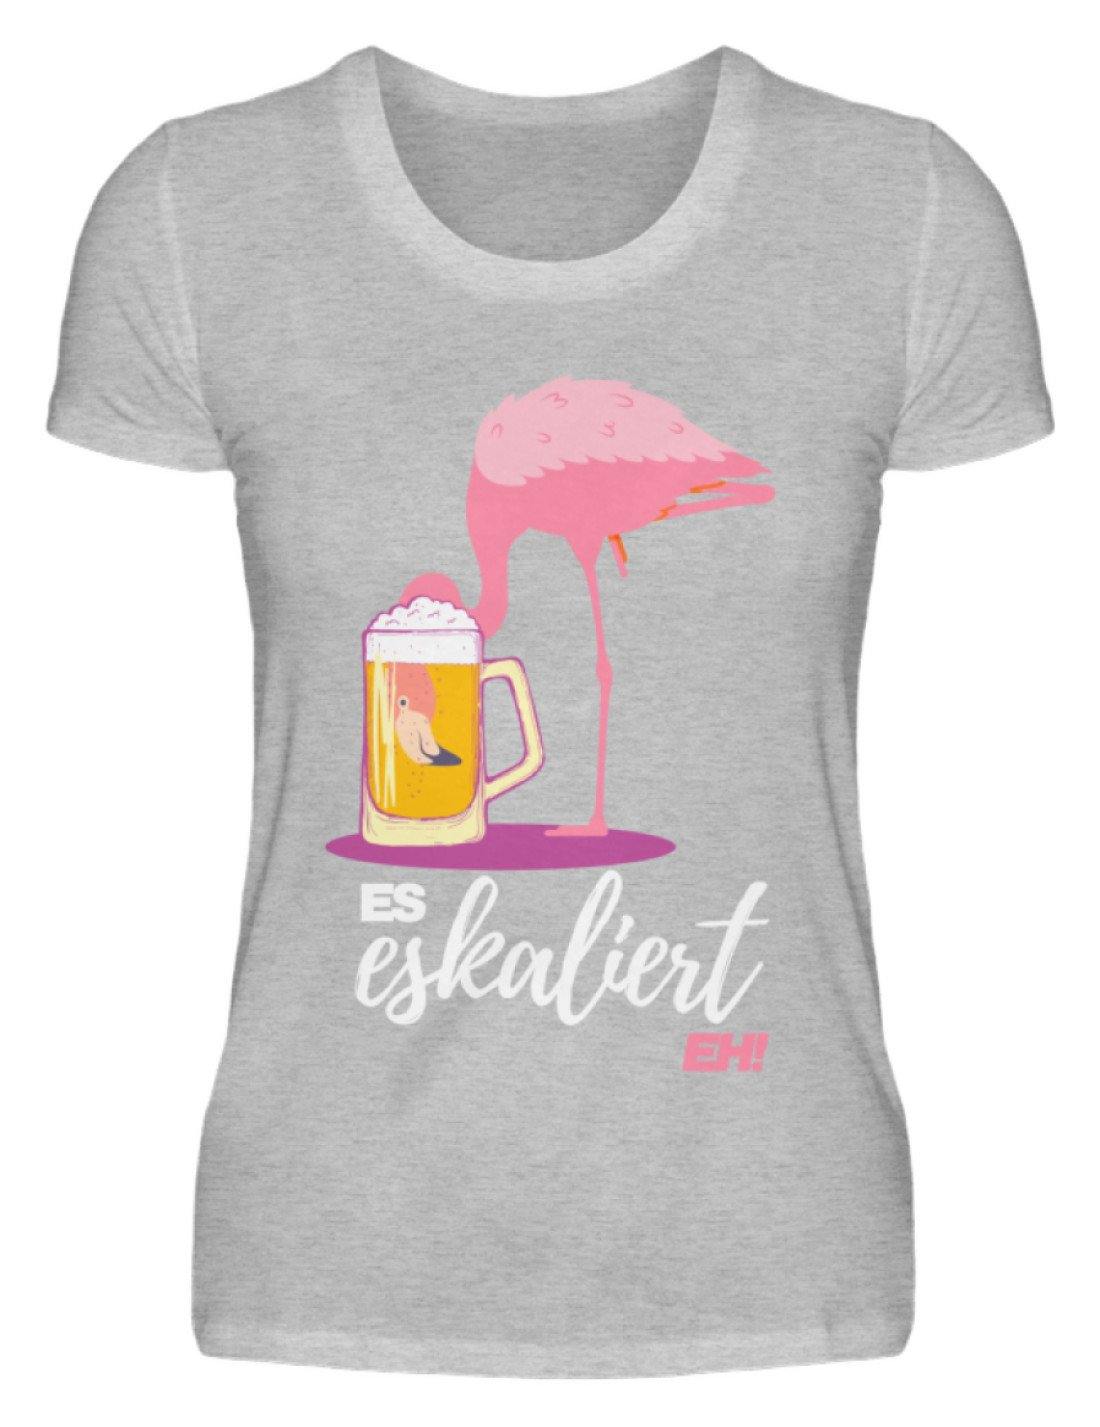 Es Eskaliert Eh - Flamingo  - Damenshirt - Words on Shirts Sag es mit dem Mittelfinger Shirts Hoodies Sweatshirt Taschen Gymsack Spruch Sprüche Statement